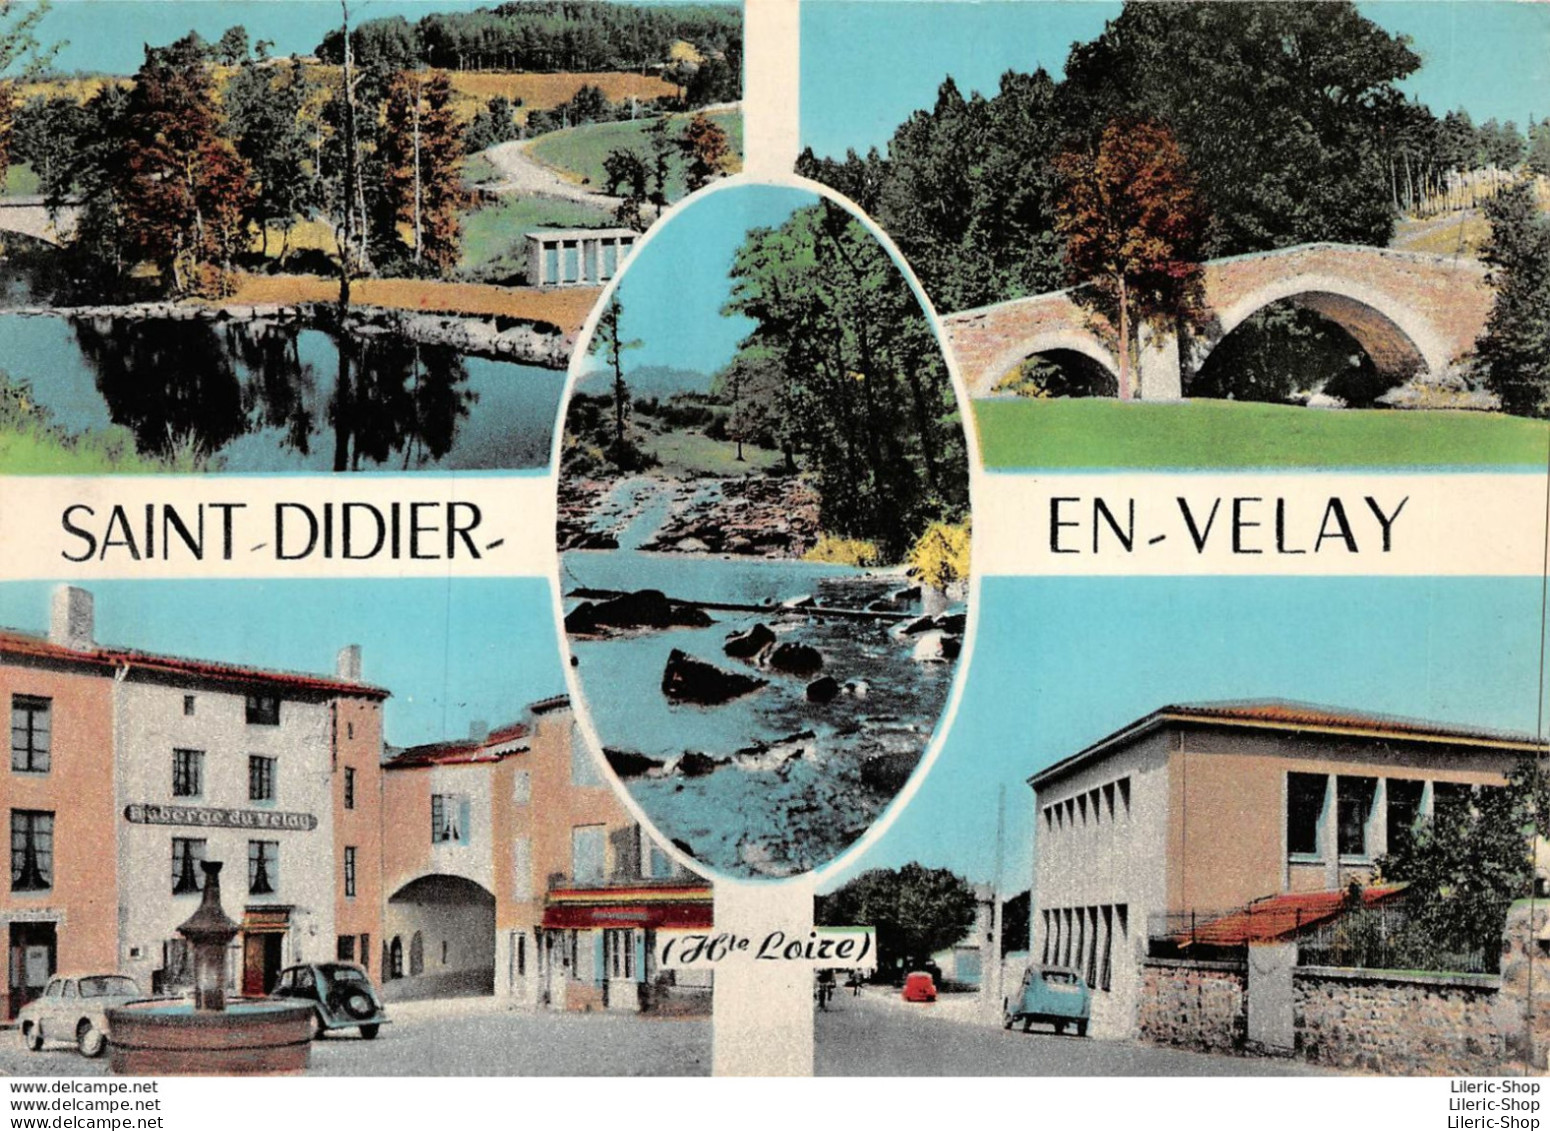 SAINT-DIDIER-en-VELAY (43) 1961-67- Multi Vues - Auberge Du Velay - Automobiles Dauphine - 2 CV - Éd. COMBIER - Saint Didier En Velay